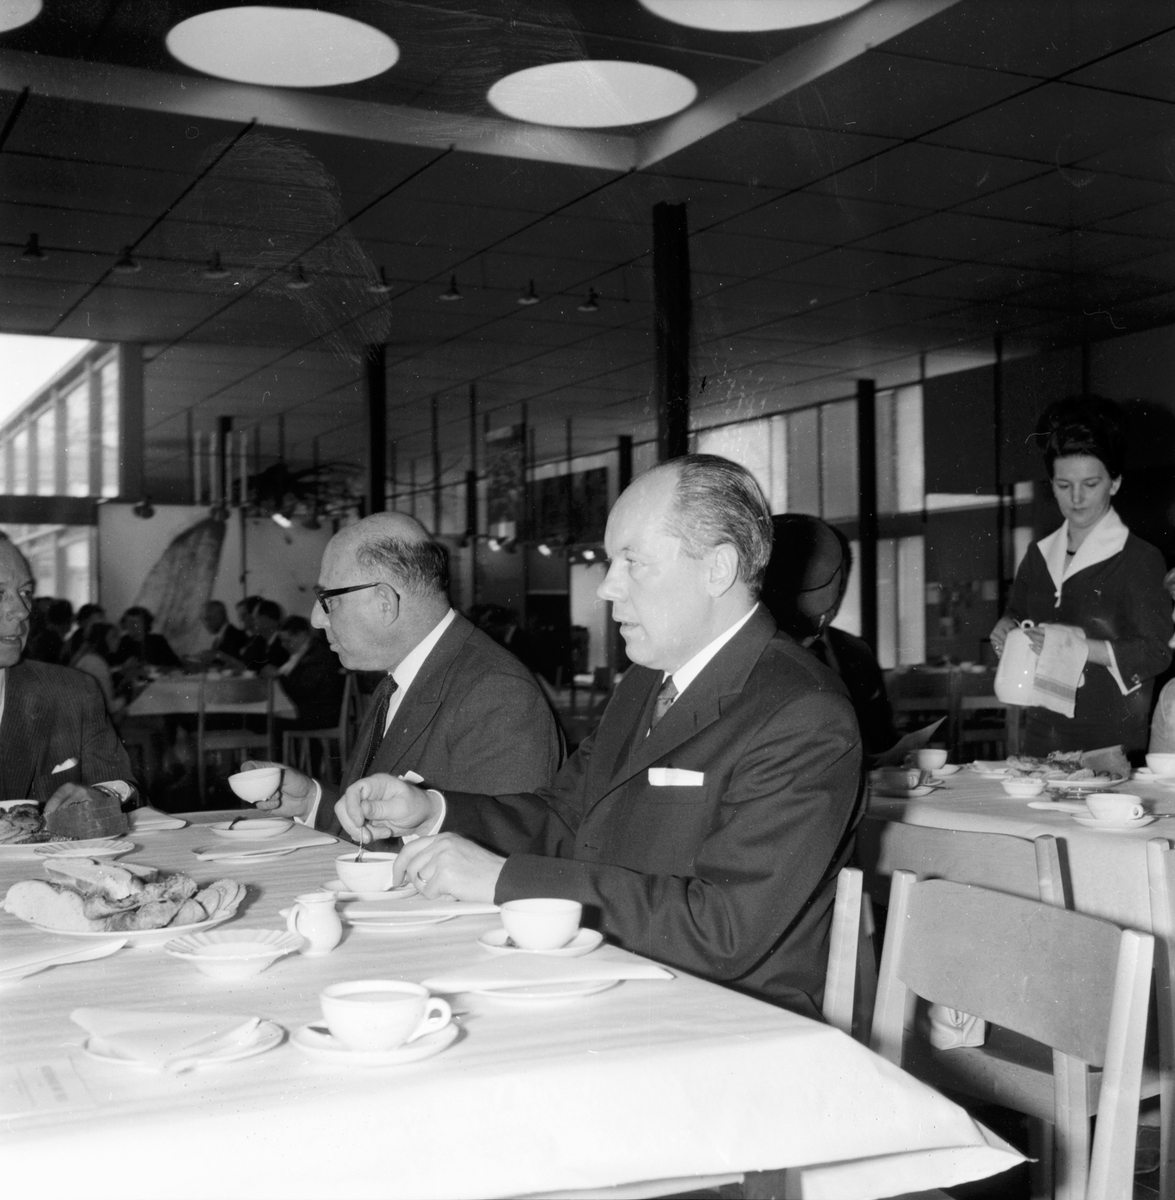 Poliaförbundets årsmöte i Gävle.
14/5-1965